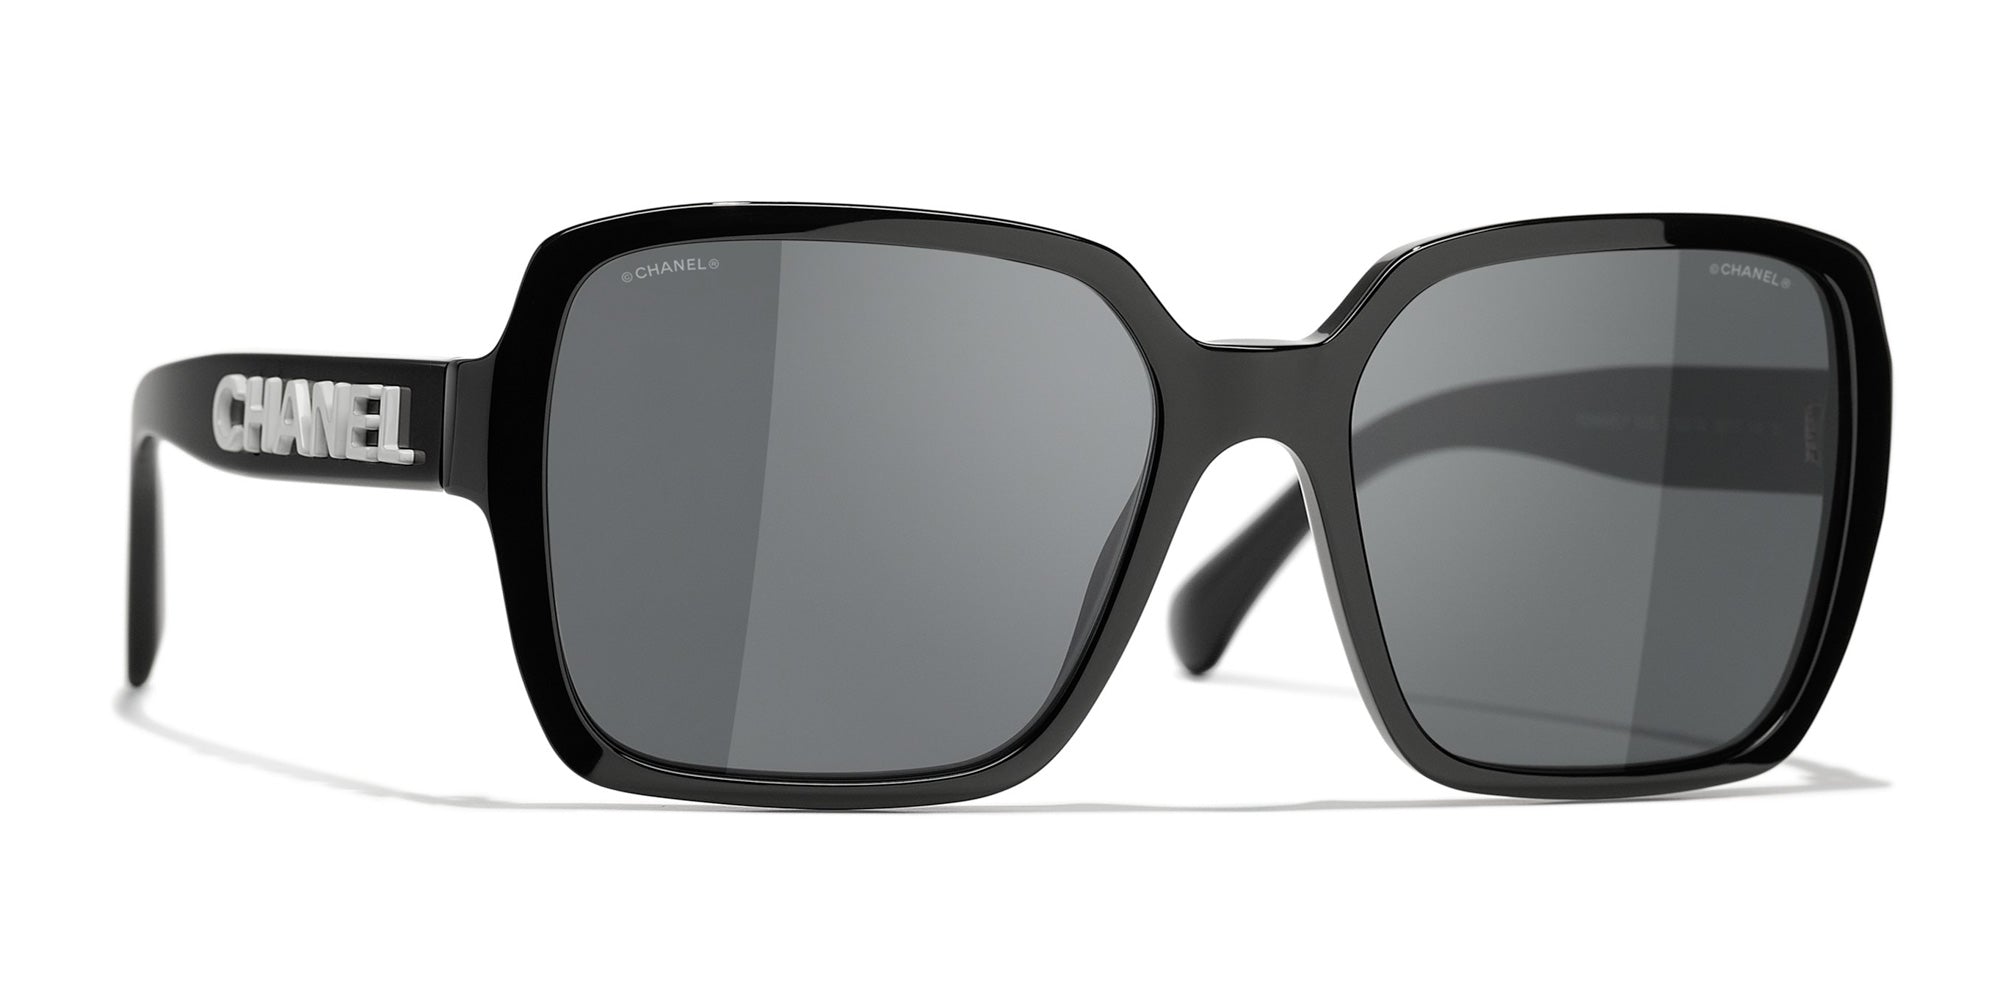 Chanel - Square Sunglasses - Black White Gray